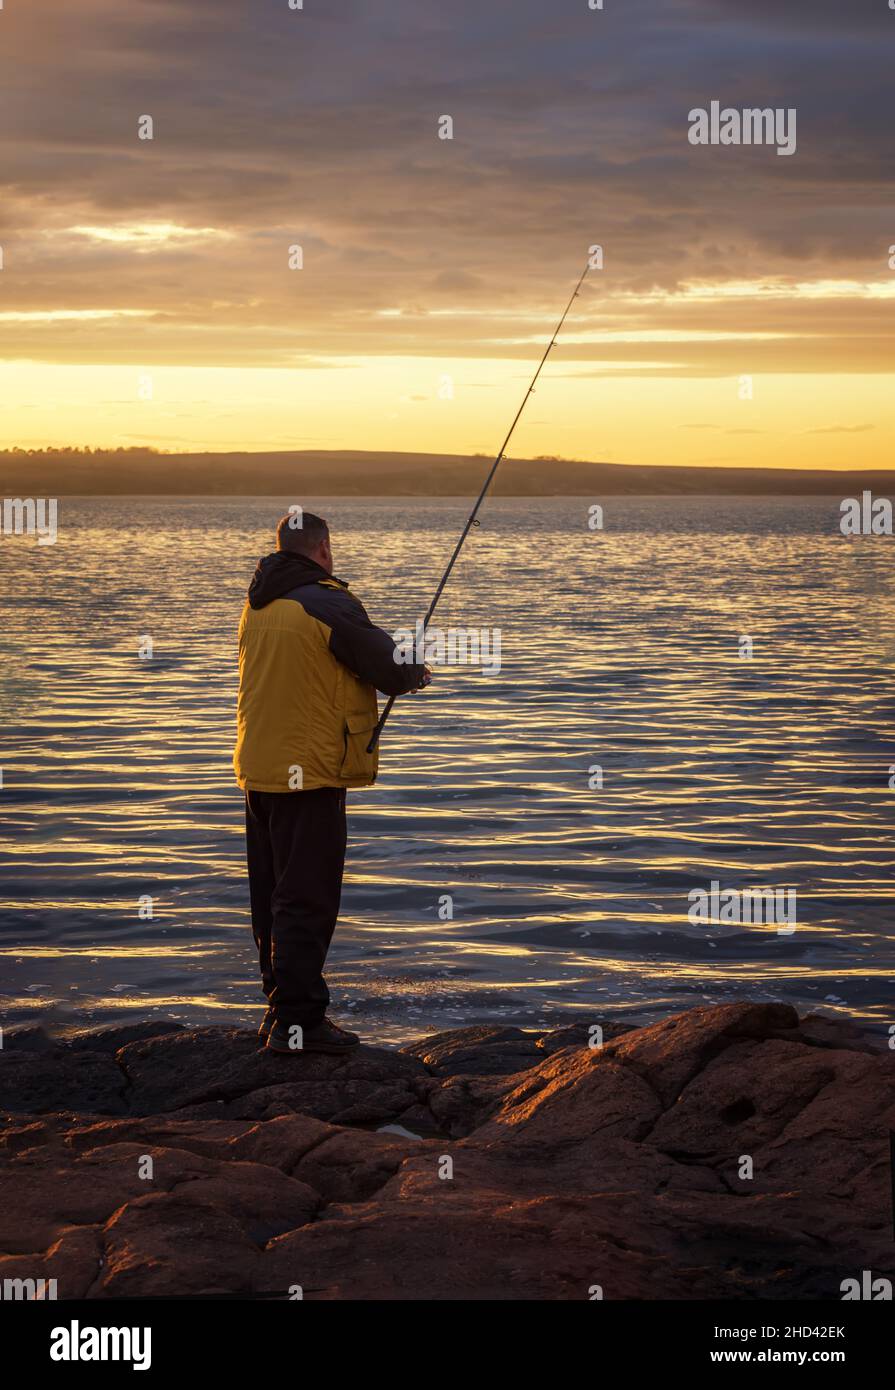 Une silhouette de pêcheur pêchant au coucher du soleil. Pêche en eau douce, prises de poissons. Pêche tournant au coucher du soleil. Banque D'Images